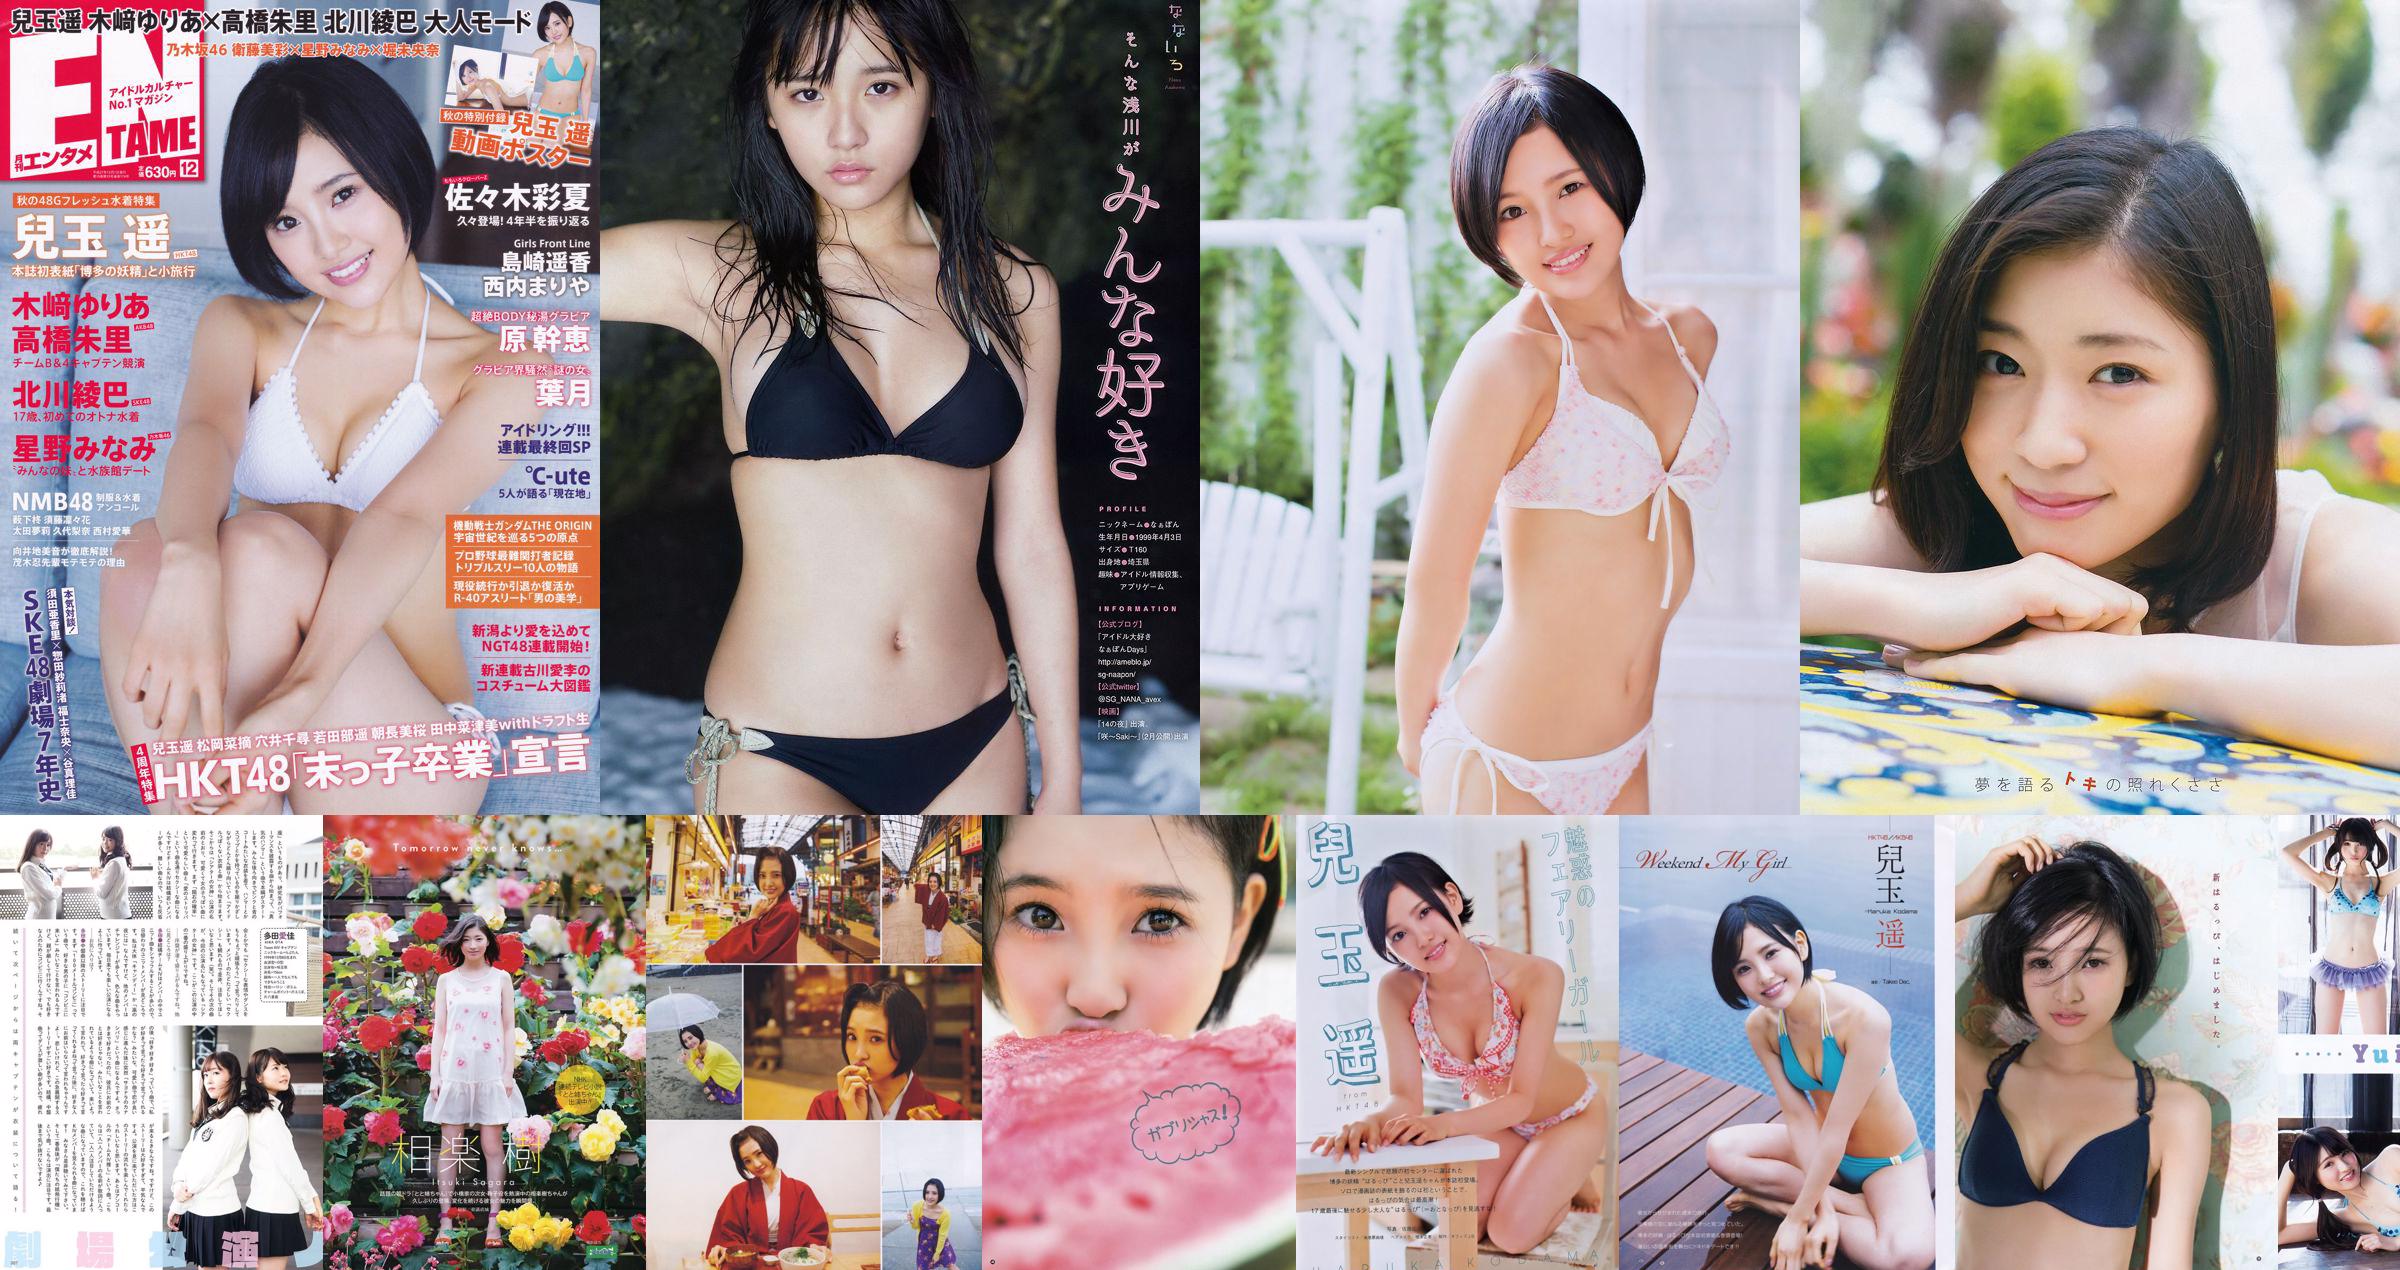 [Young Gangan] Haruka Kodama Itsuki Sagara 2016 No.11 Photo Magazine No.be4499 Página 2